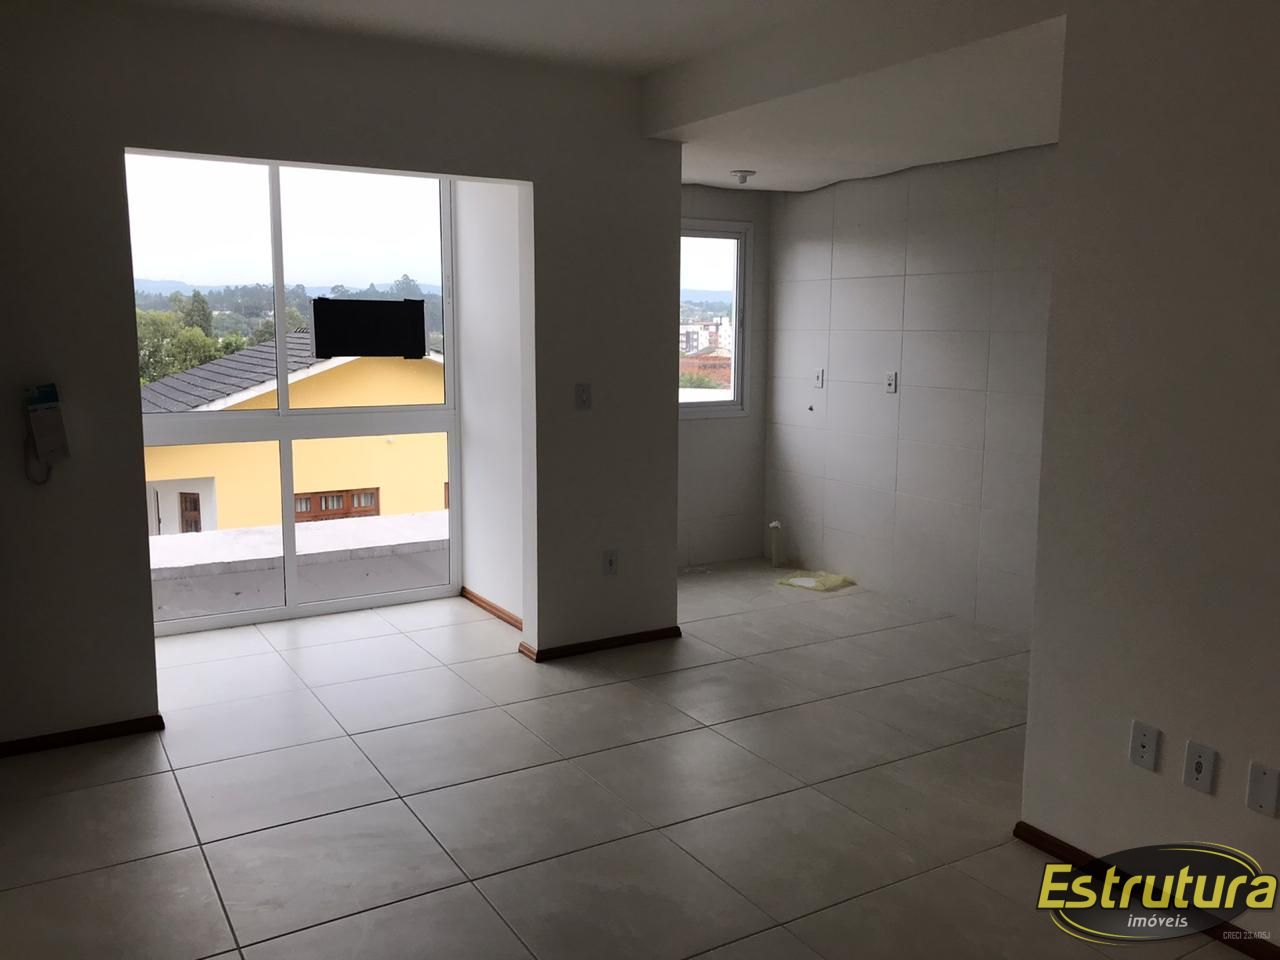 Apartamento com 2 Dormitórios à venda, 56 m² por R$ 240.000,00